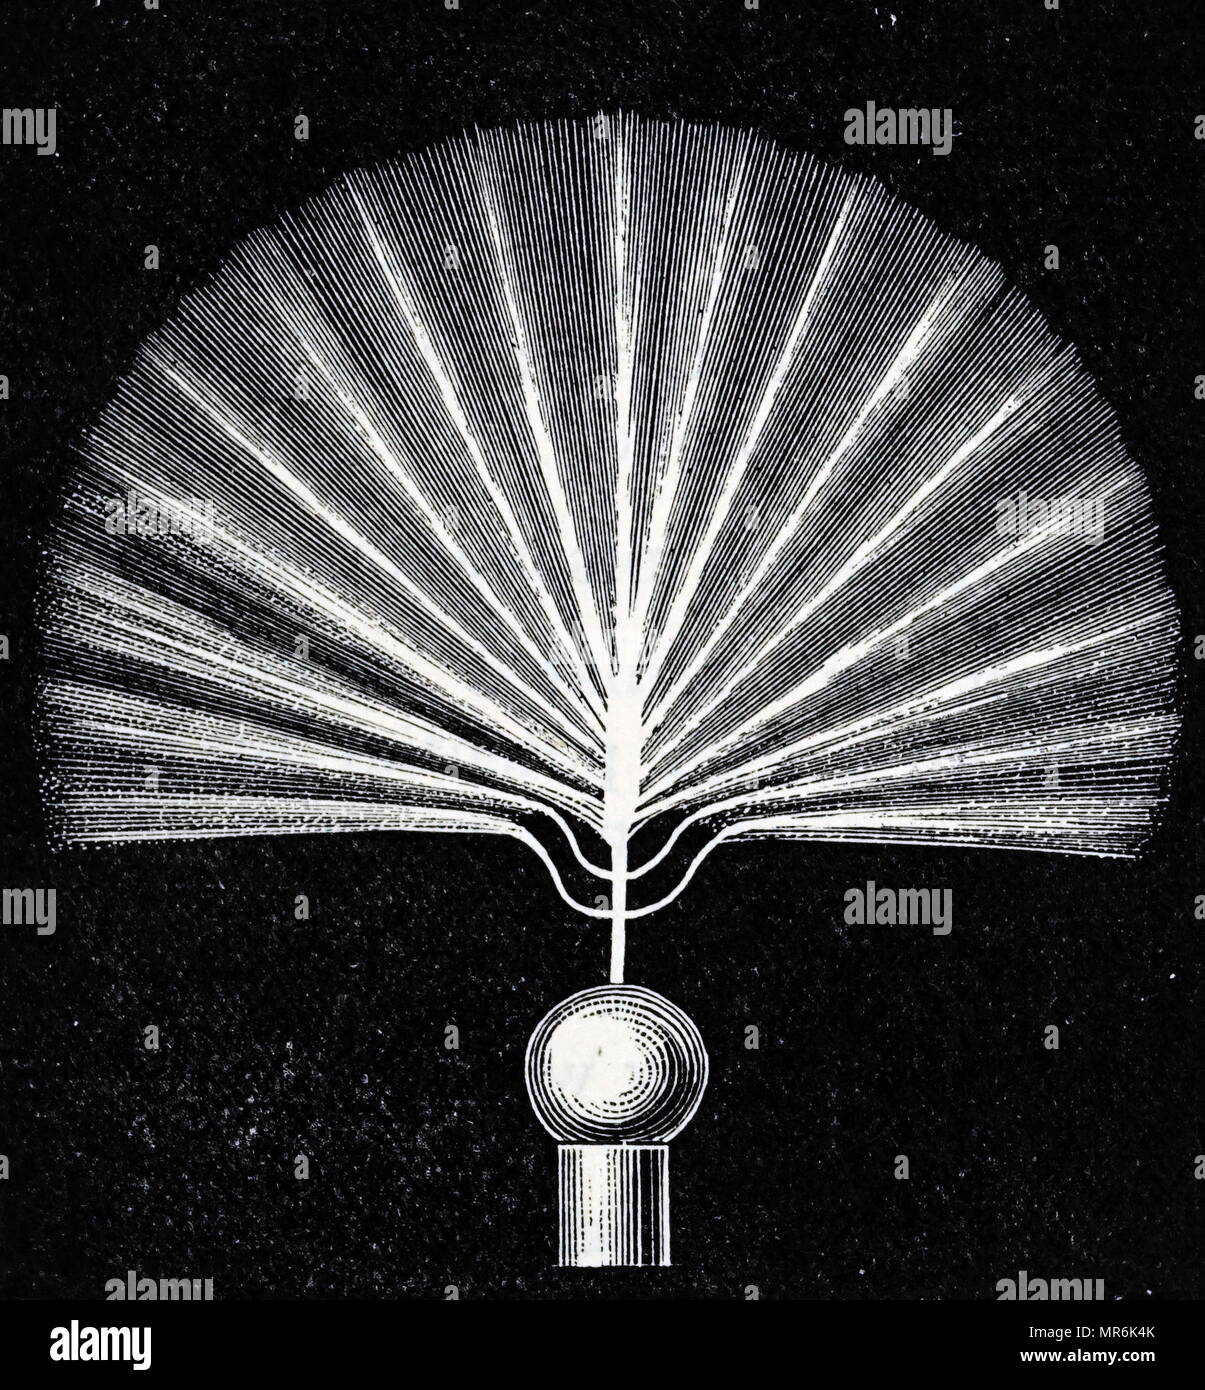 Gravur, Nikola Tesla's A.C. Experimente: Hochfrequenz Entladebürste. Nikola Tesla (1856-1943) eine Serbian-American Erfinder, Elektrotechniker, Maschinenbauer, Physiker und Zukunftsforscher. Vom 20. Jahrhundert Stockfoto